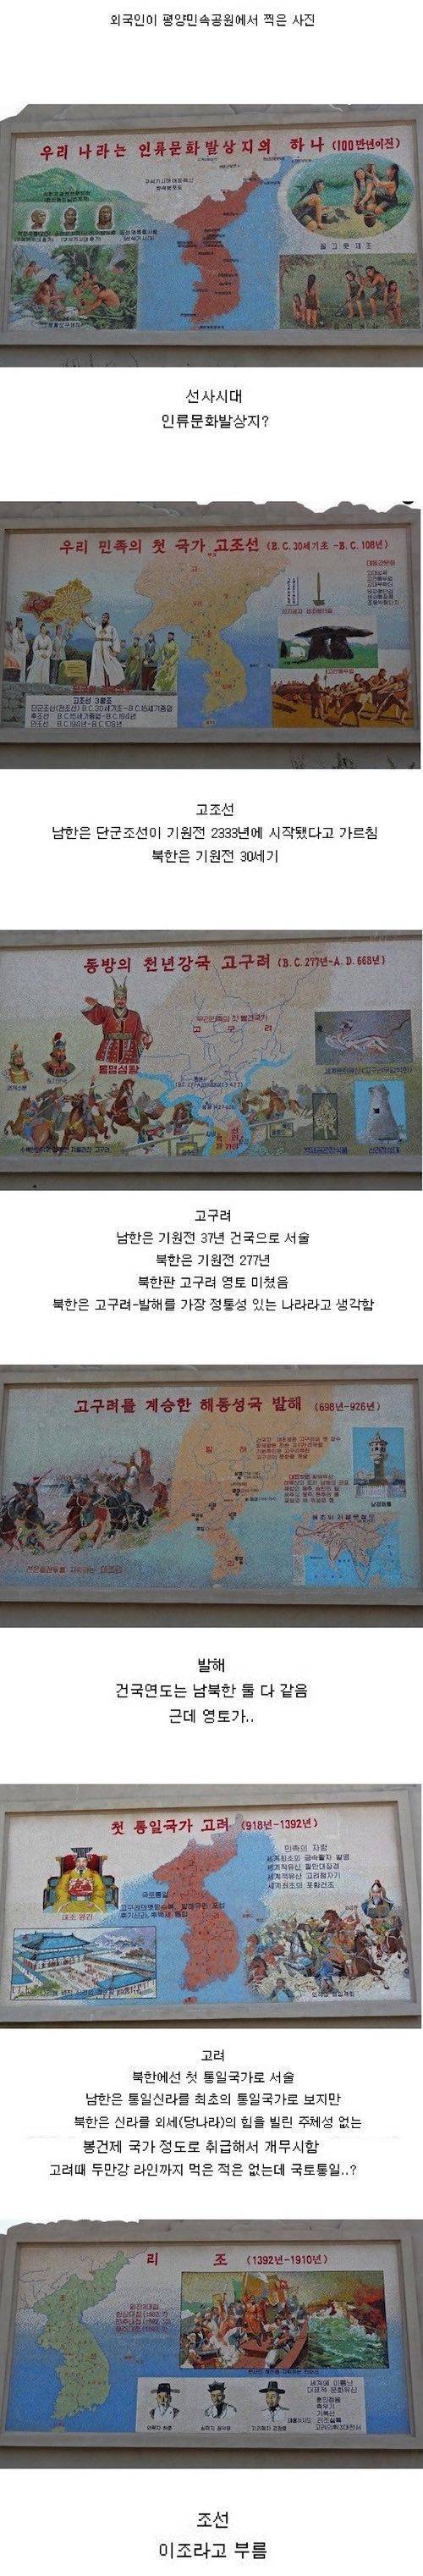 북한의 역사 인식.jpg